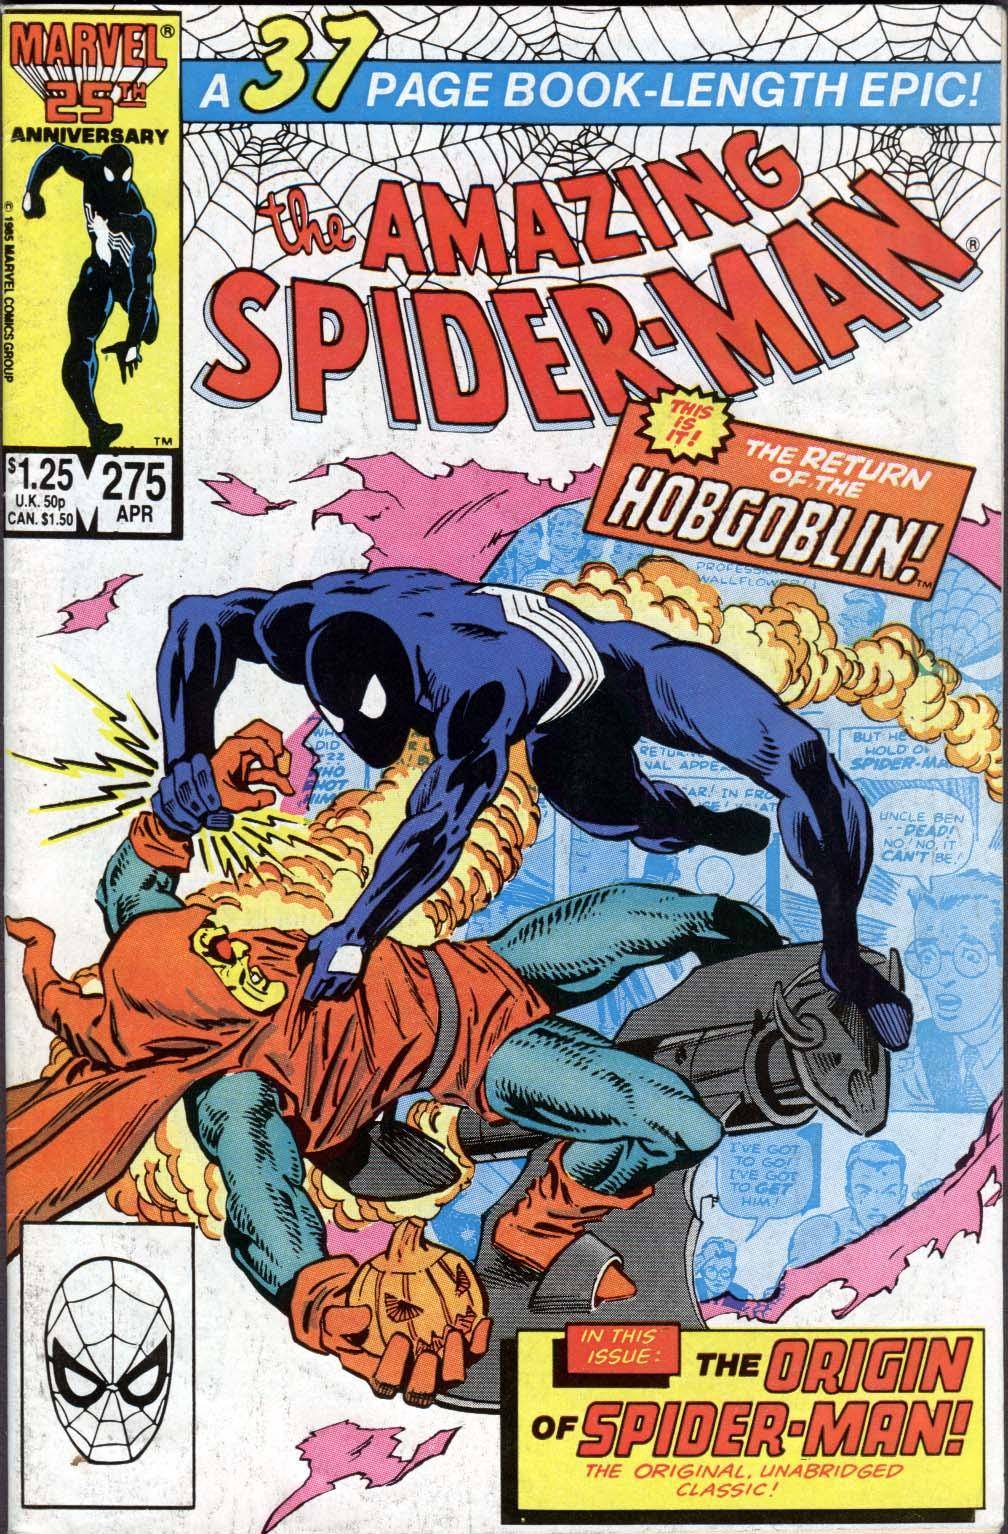 Spider-Man [2661] Amazing Spider-Man v1 275 cbz